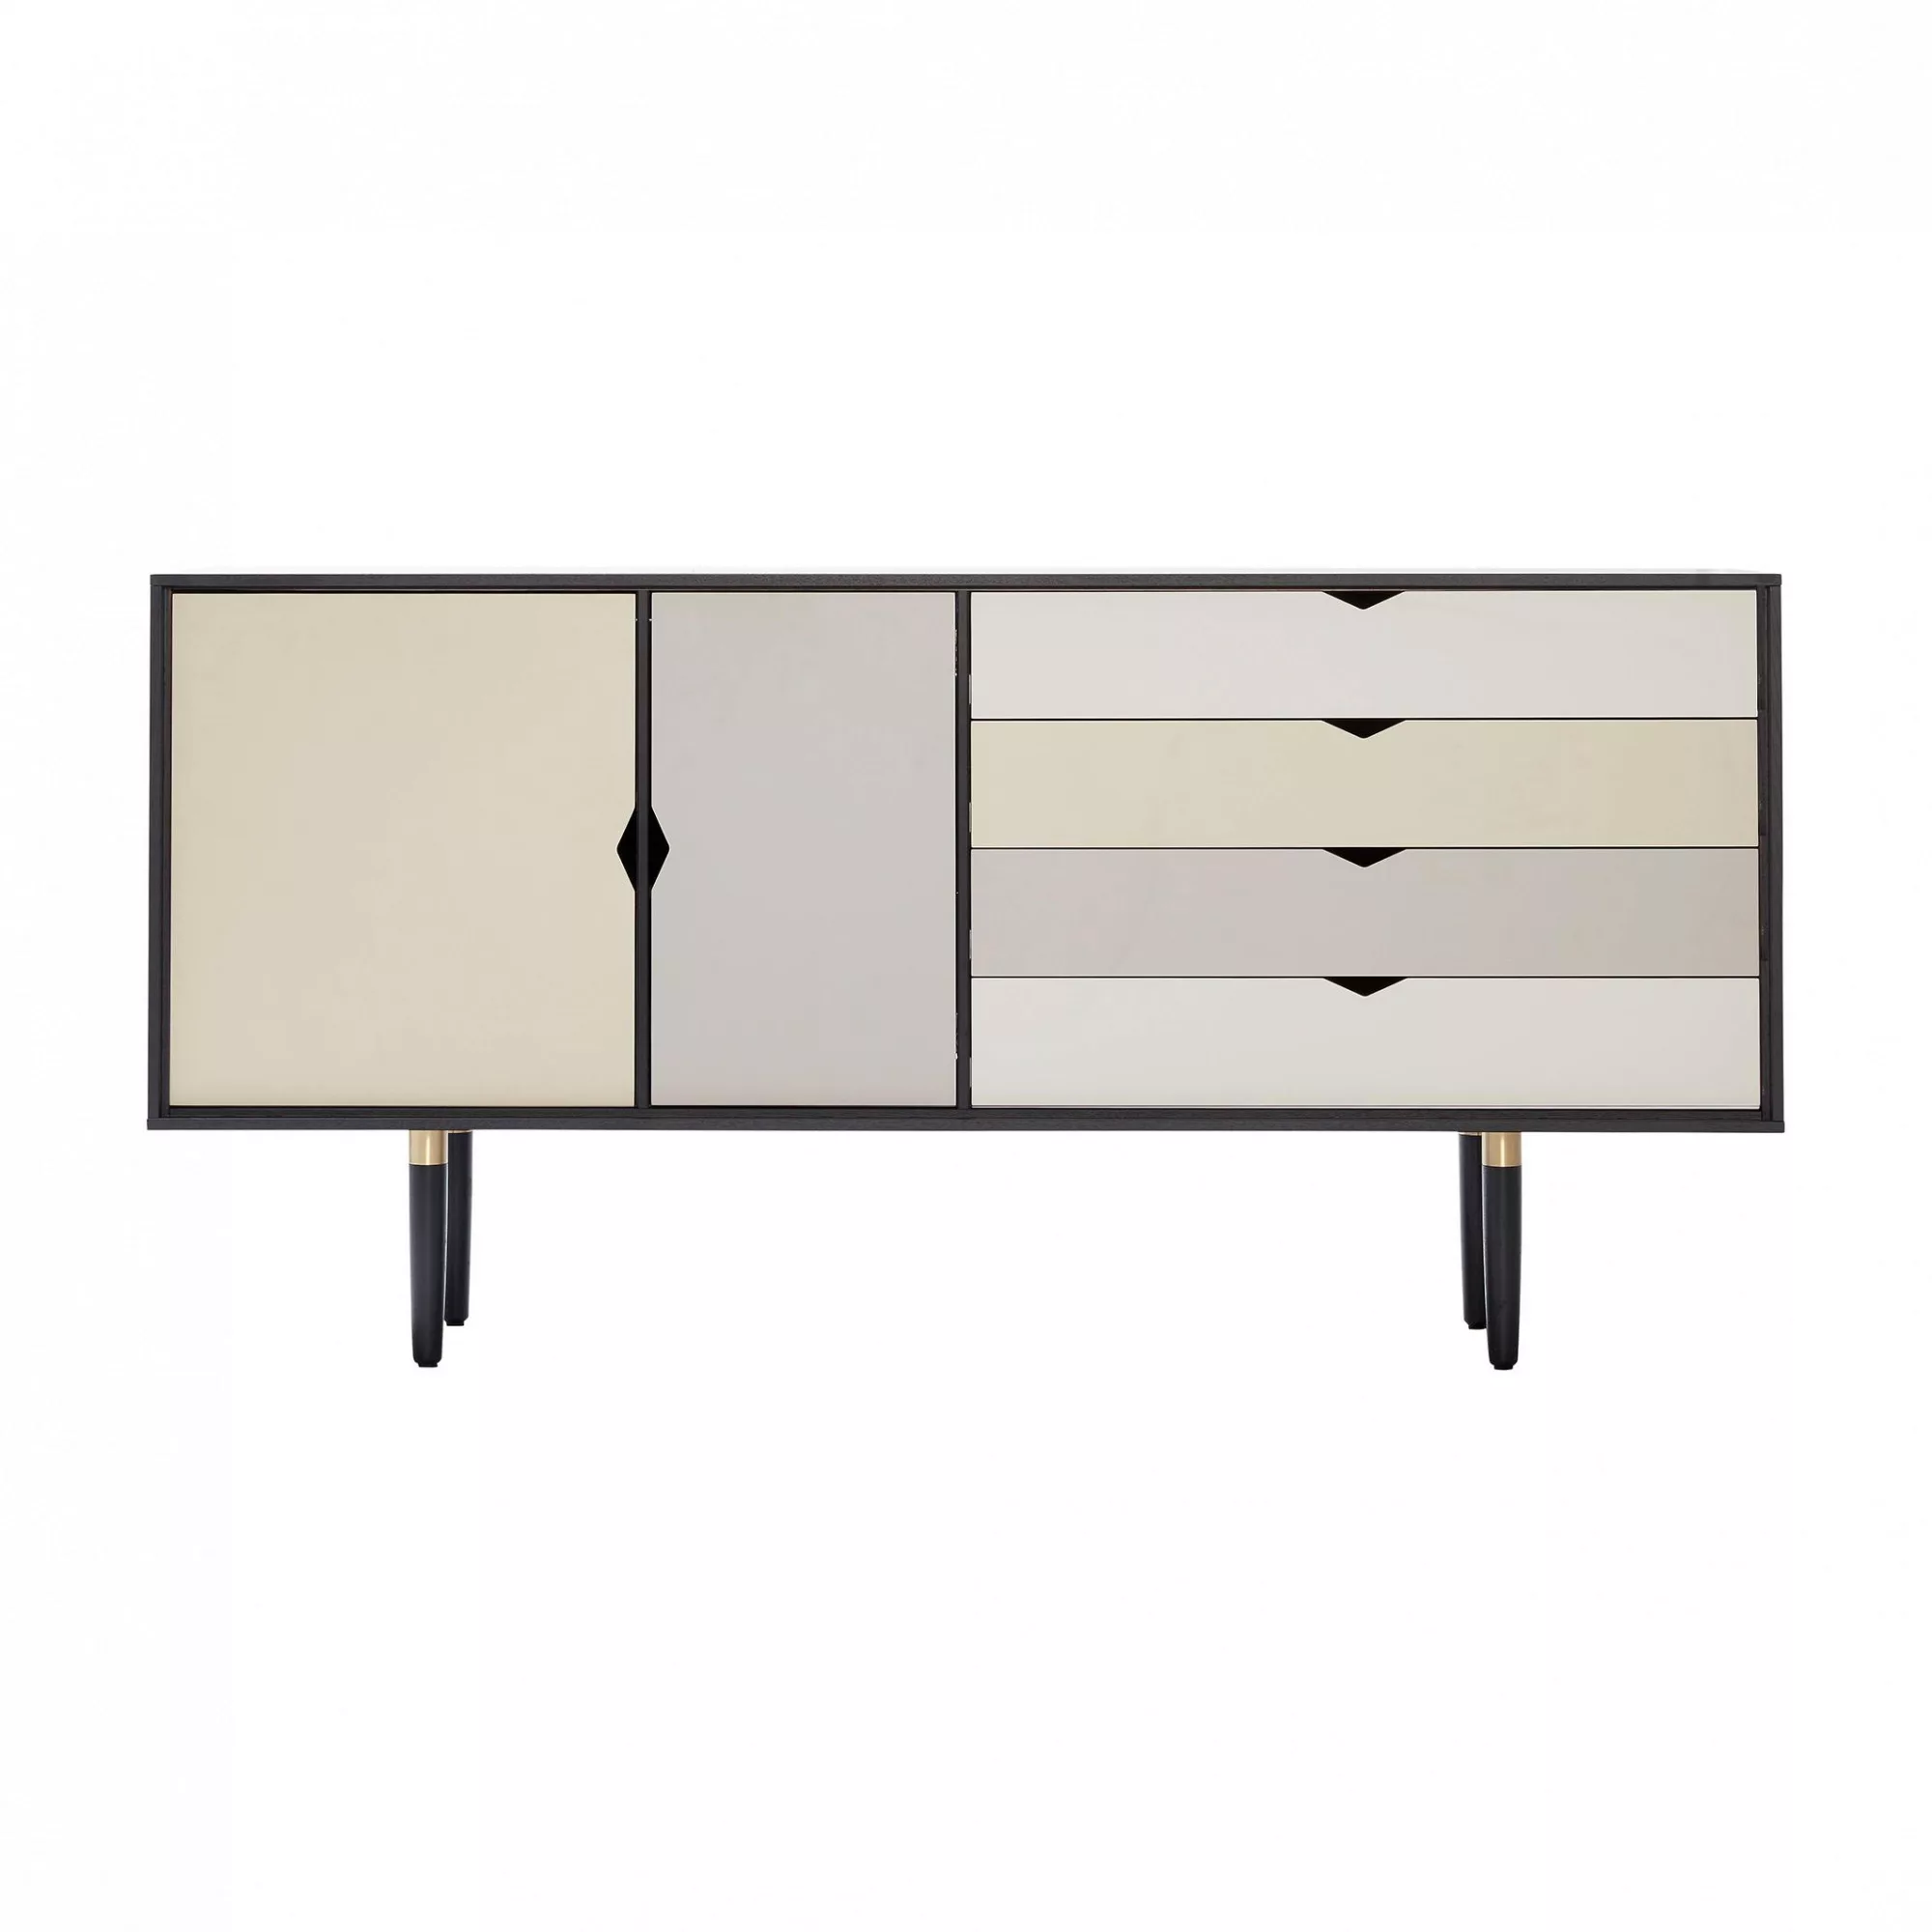 Andersen Furniture - S6 Sideboard Fronten bunt - silberweiß/beige/metallgra günstig online kaufen